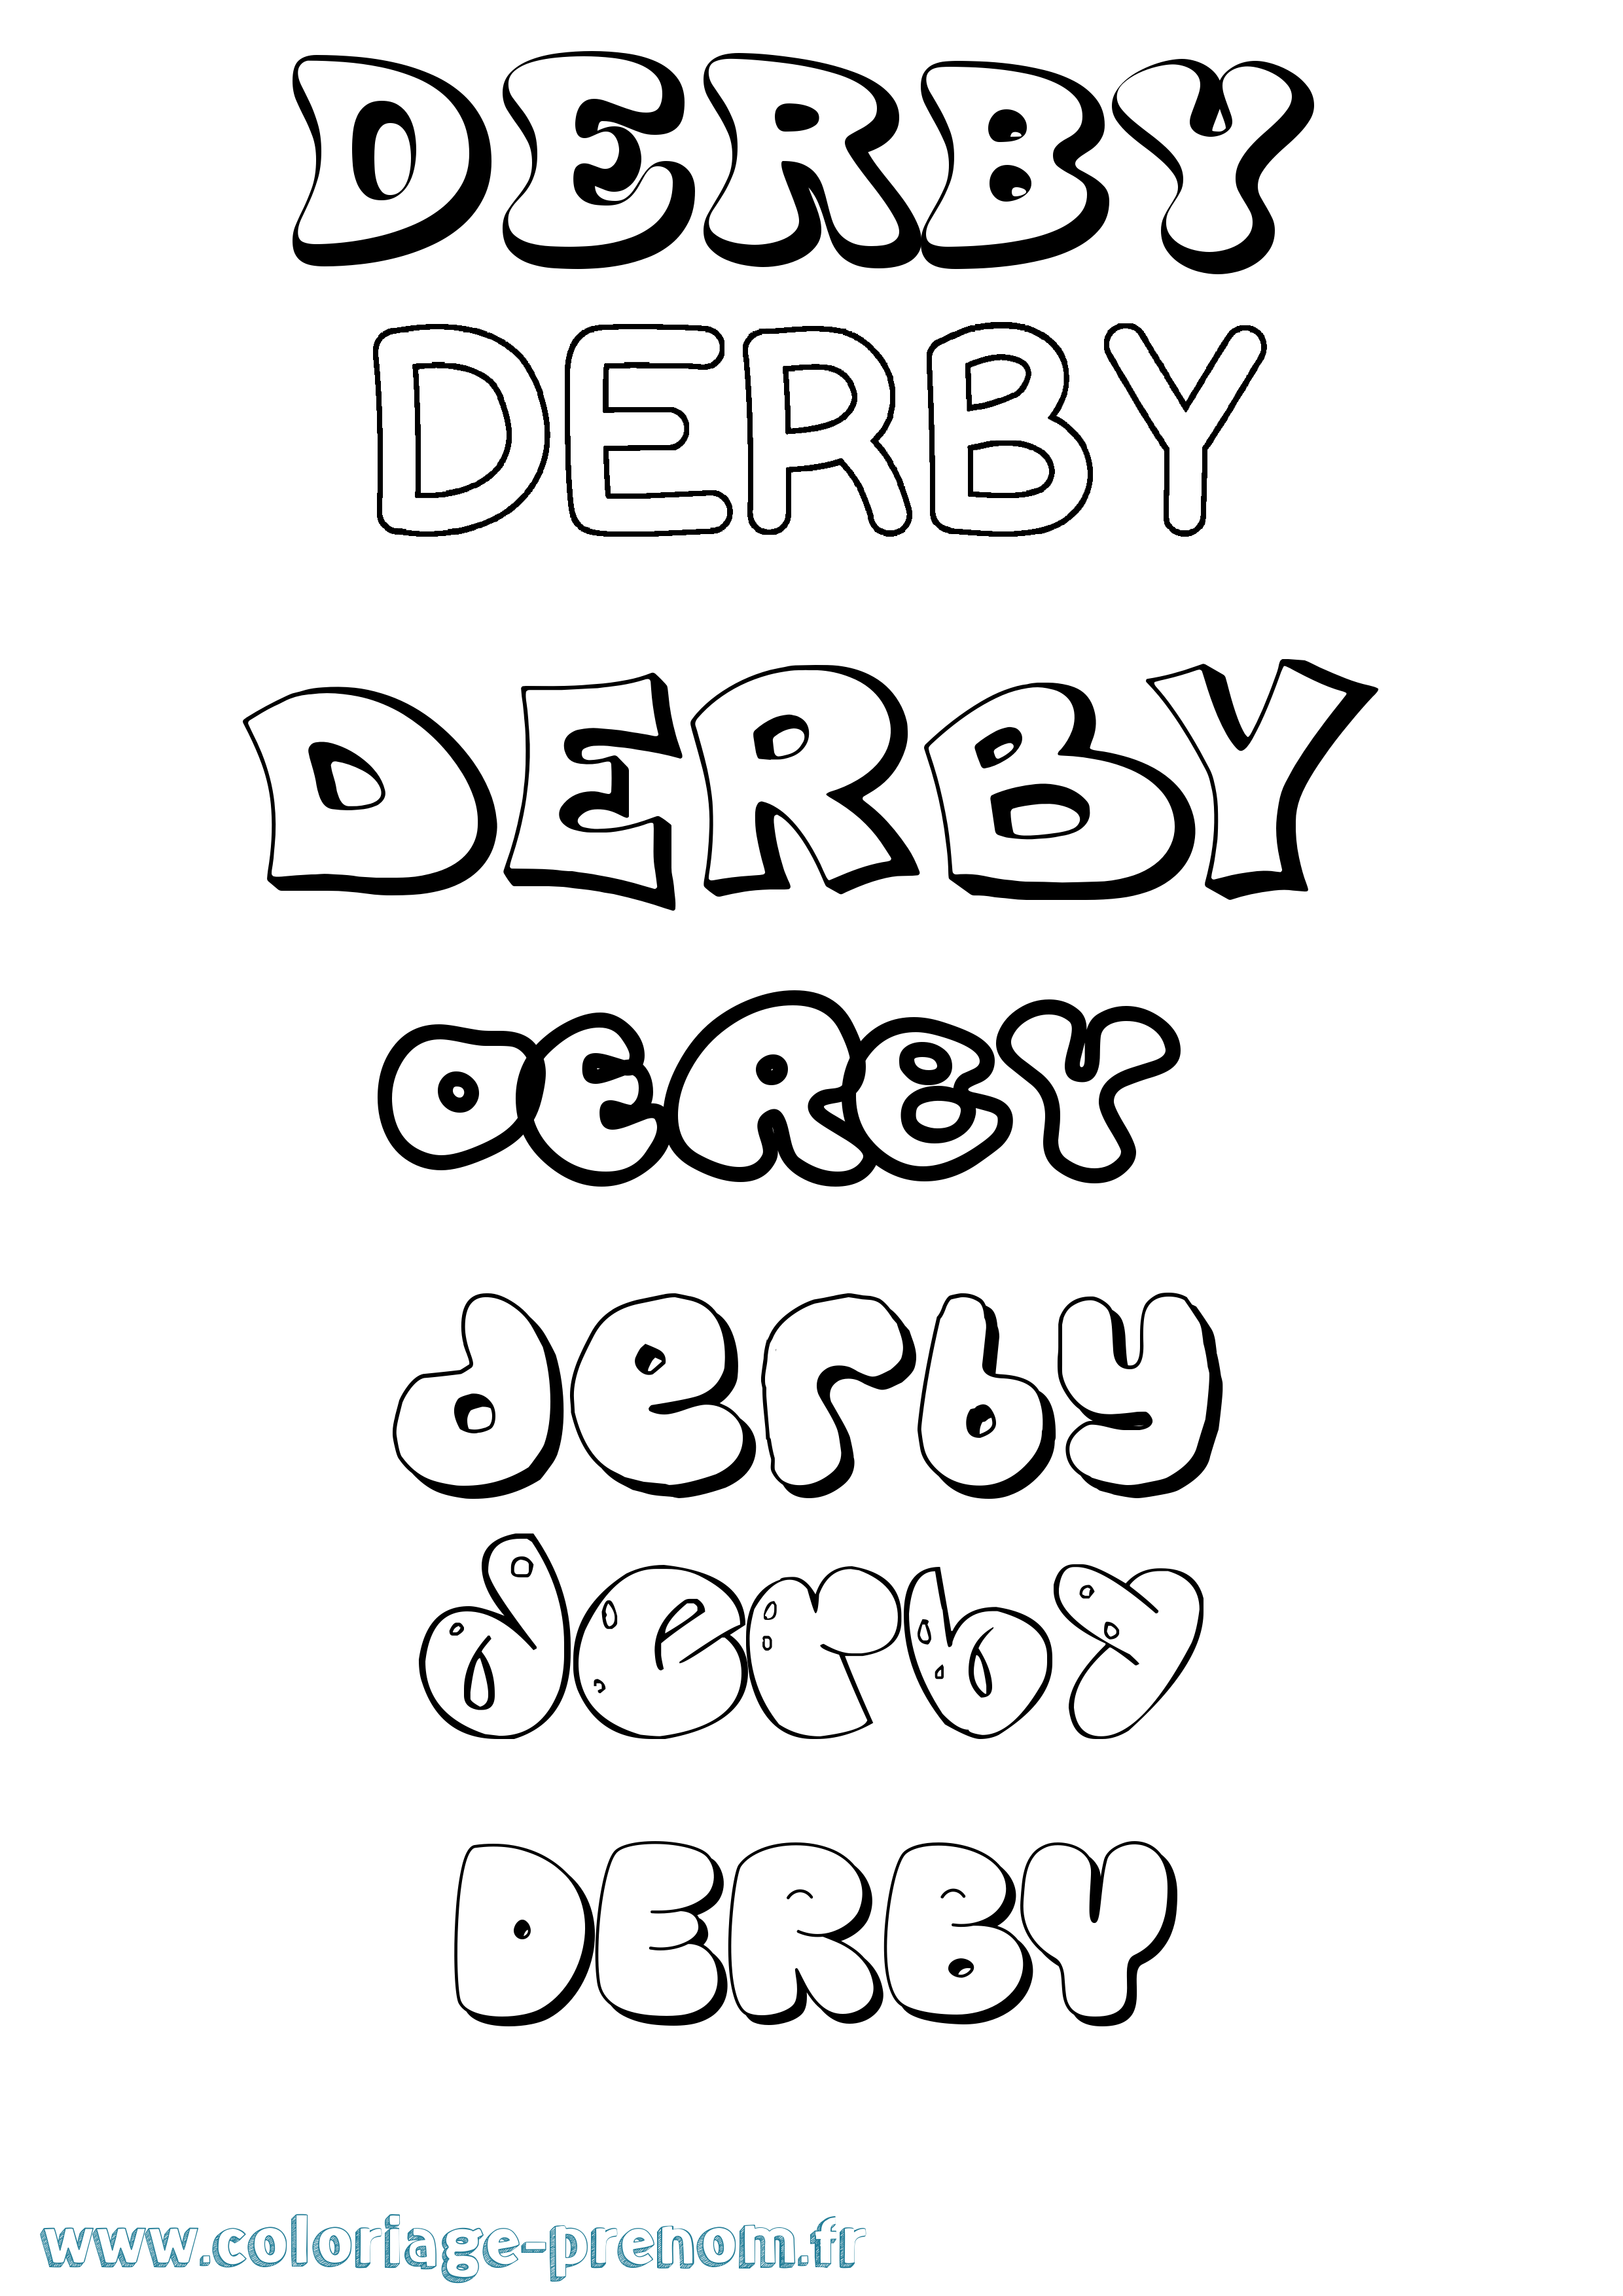 Coloriage prénom Derby Bubble